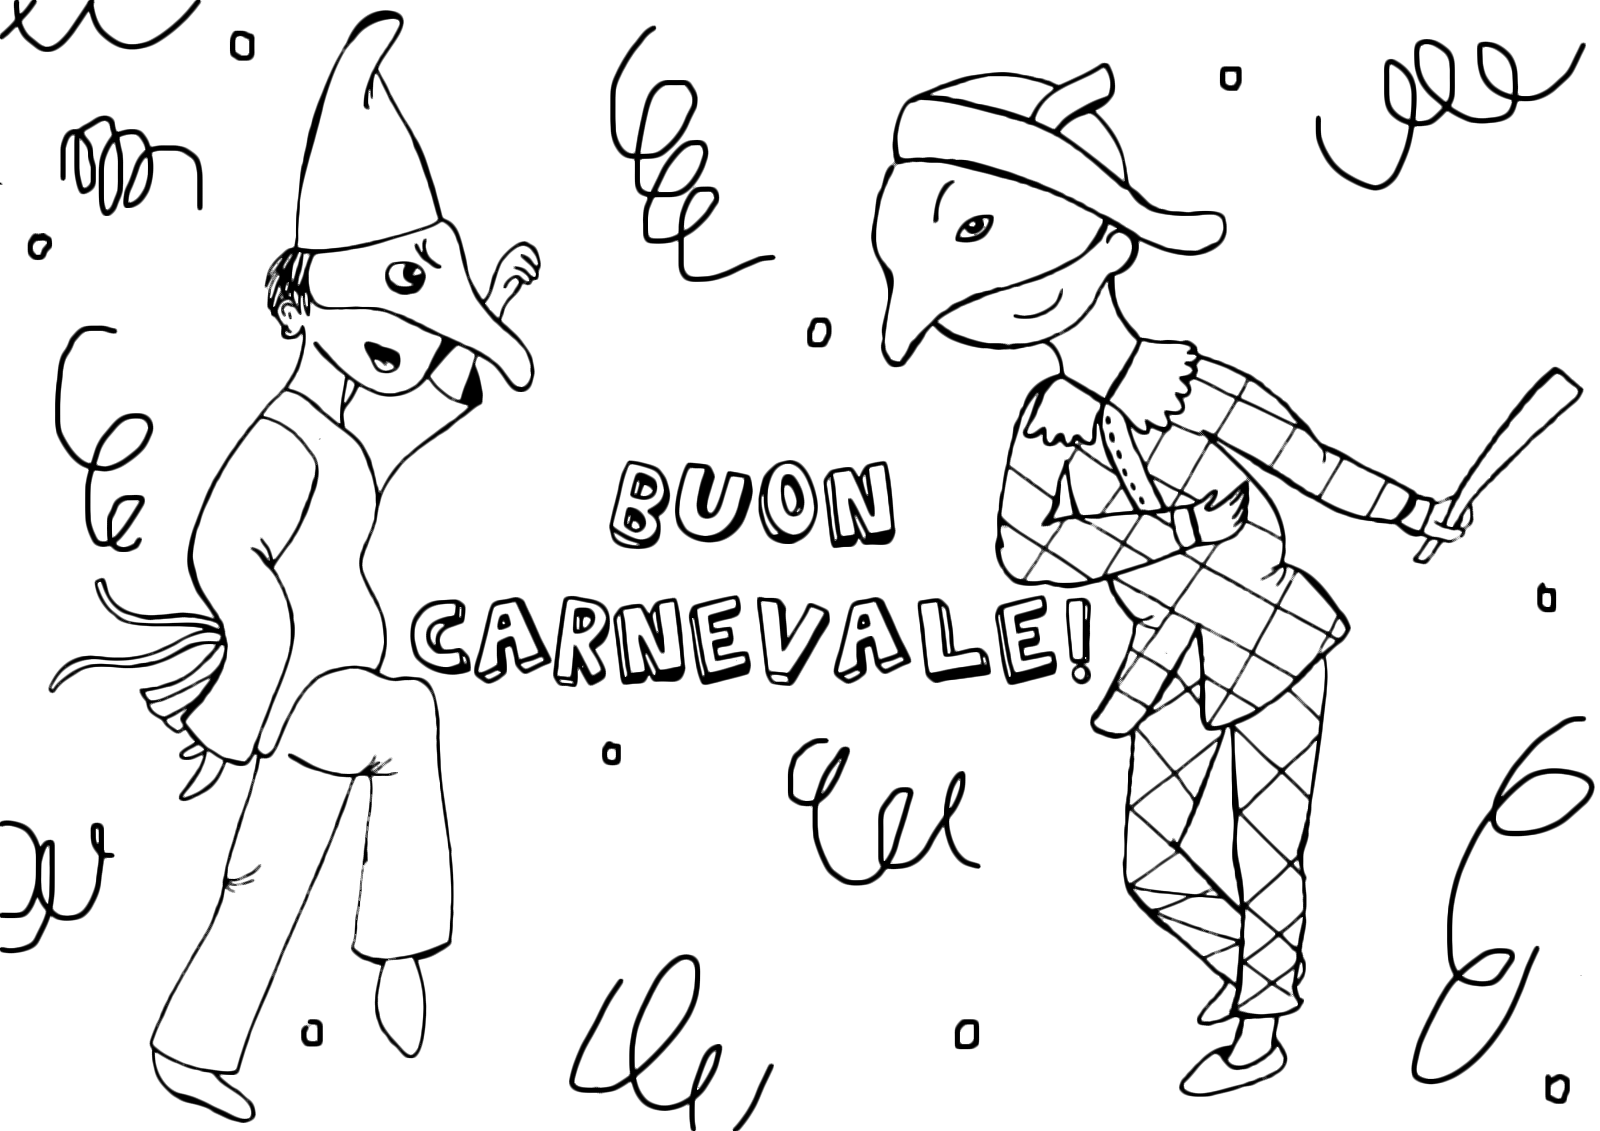 Carnevale - Disegno di Arlecchino e Pulcinella che ballano assieme